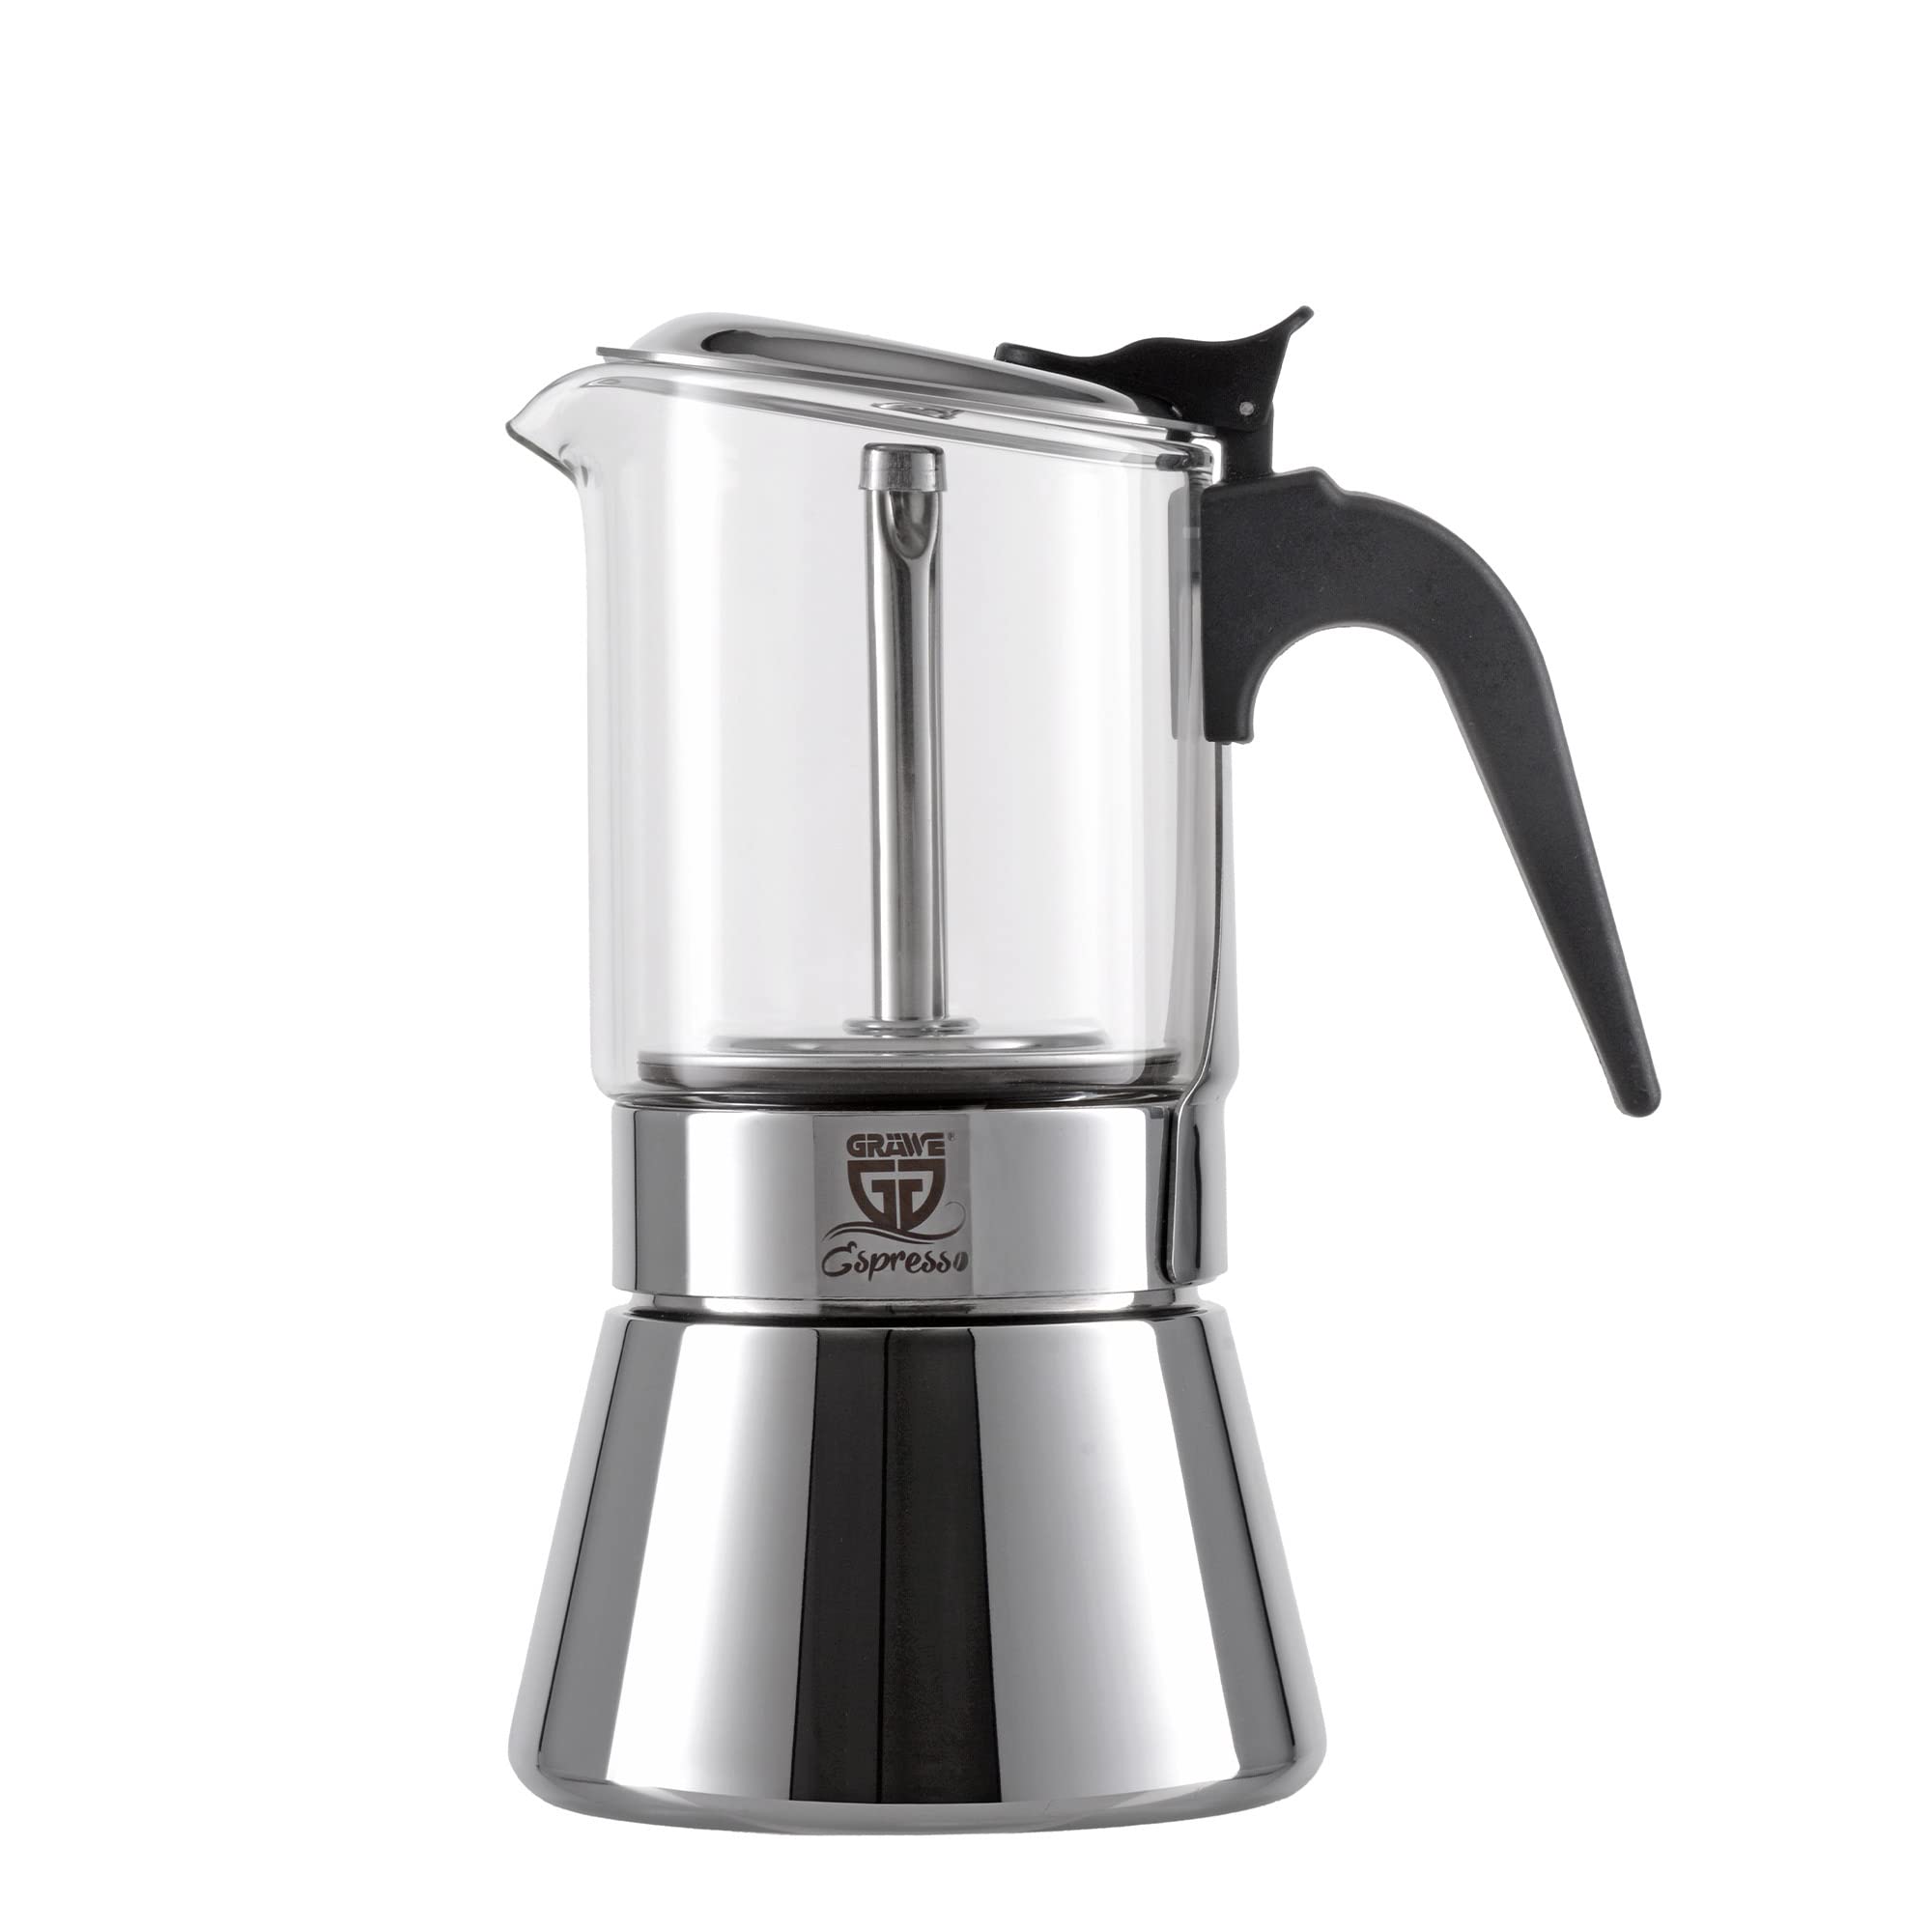 GRÄWE Espressokocher aus Edelstahl mit Glaskanne, für Induktion und alle Herdarten geeignet, spülmaschinengeeignet, 6 Tassen, 260 ml